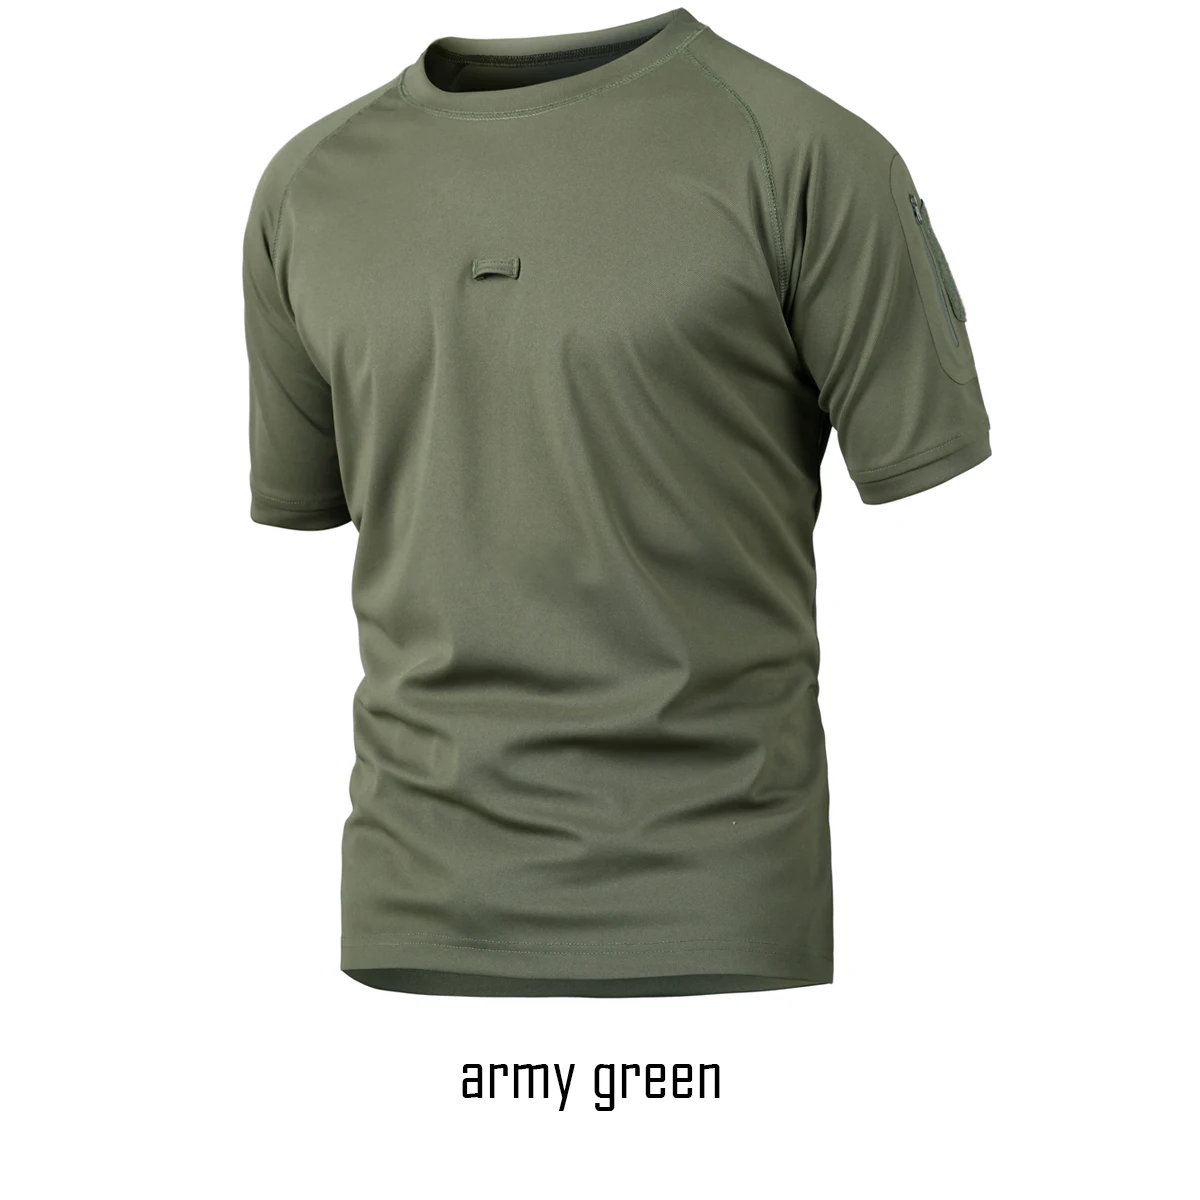 Merdouk Для мужчин быстросохнущая футболка с круглым вырезом футболки тактическая группировка сухопутных сил дышащая короткий рукав - Цвет: army green